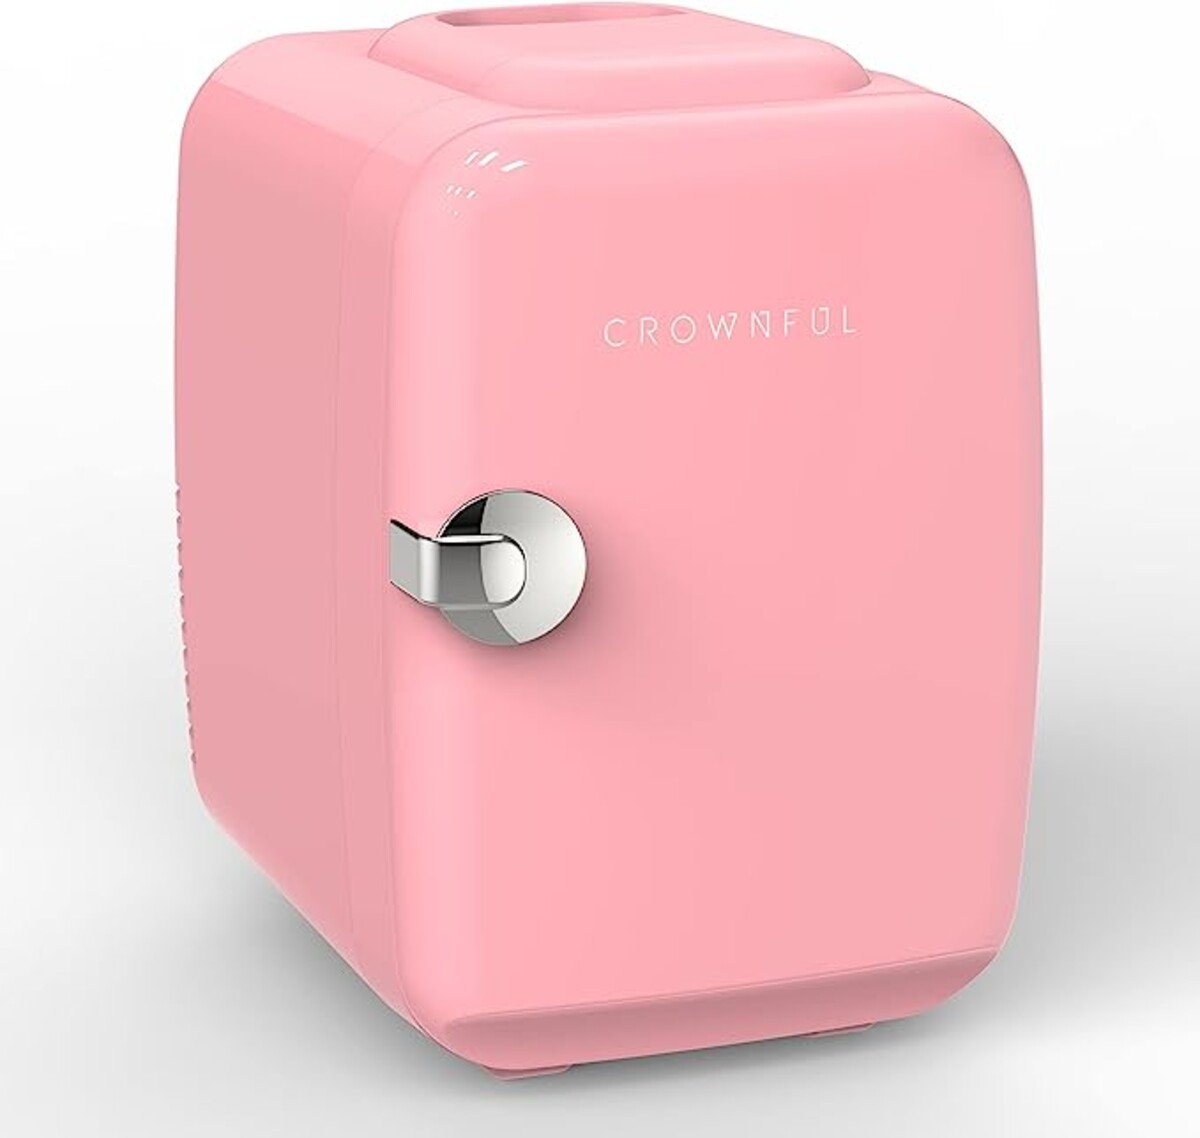 Minichladnička predstavuje dokonalý darček pre ženy. 